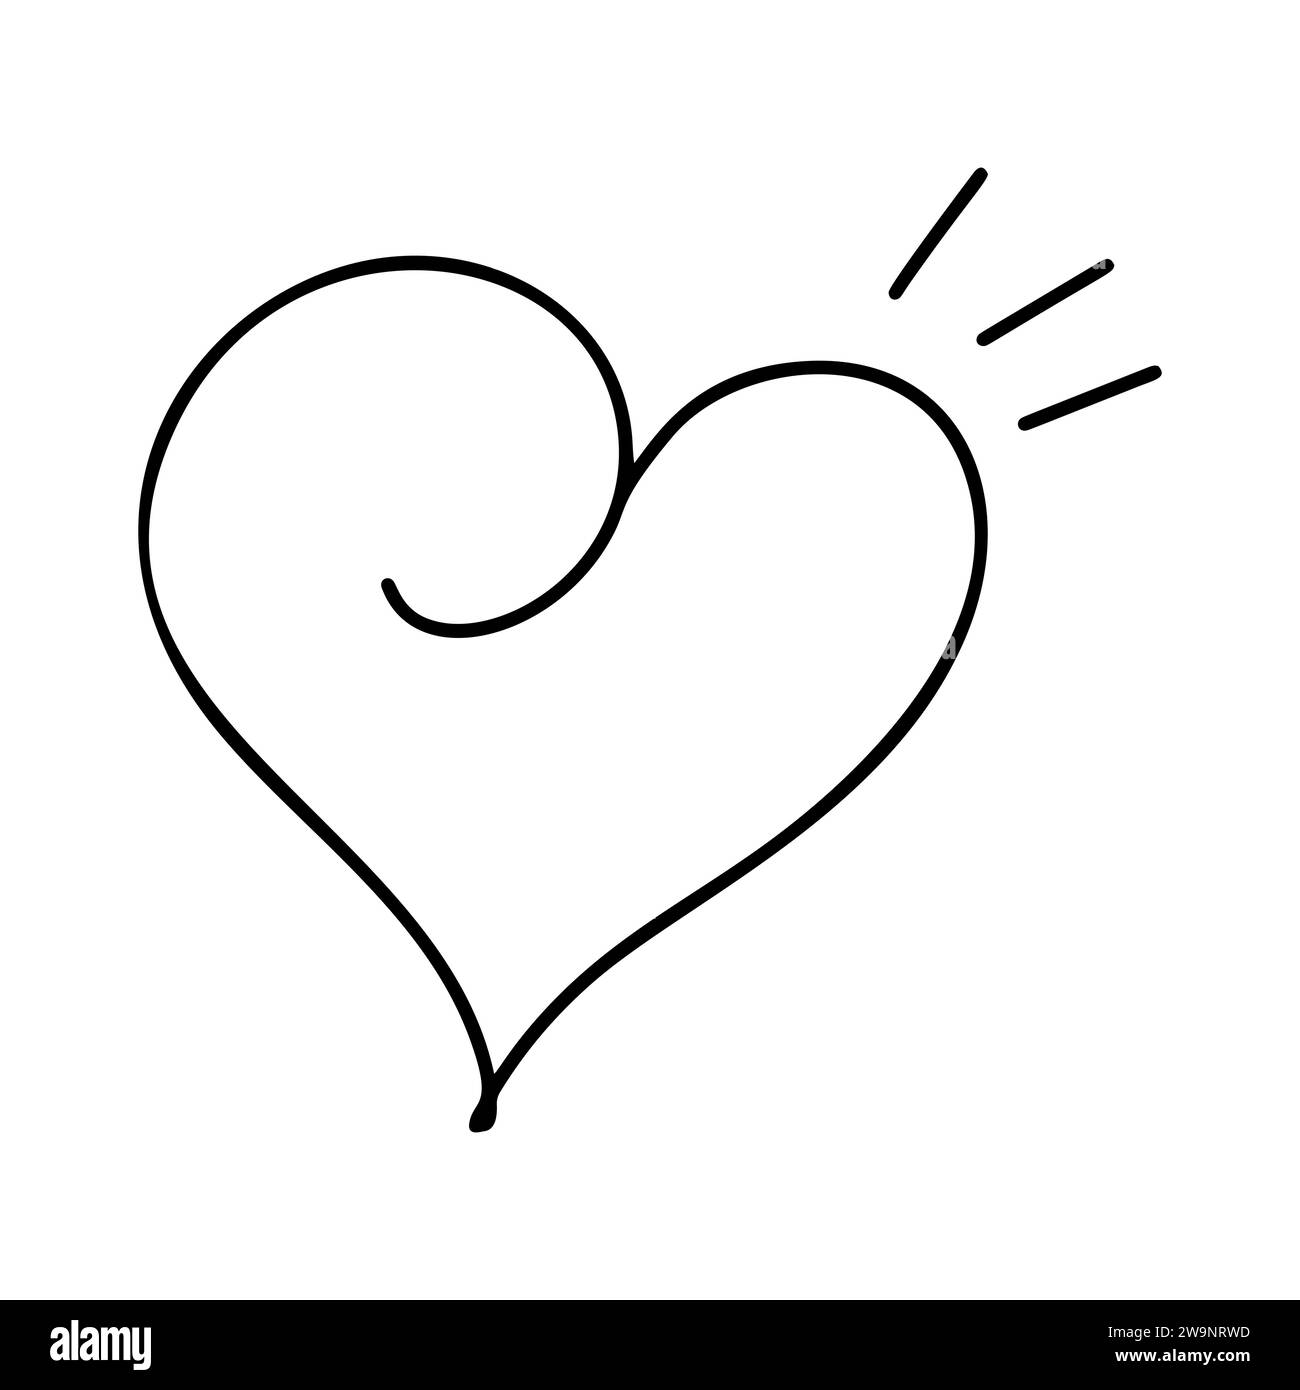 Hand gezeichnet Liebe Herz mit Strahlen Vektor-Logo Linie Illustration. Schwarze Kontur. Element Monoline für Valentinstag Banner, Poster, Grußkarte Stock Vektor